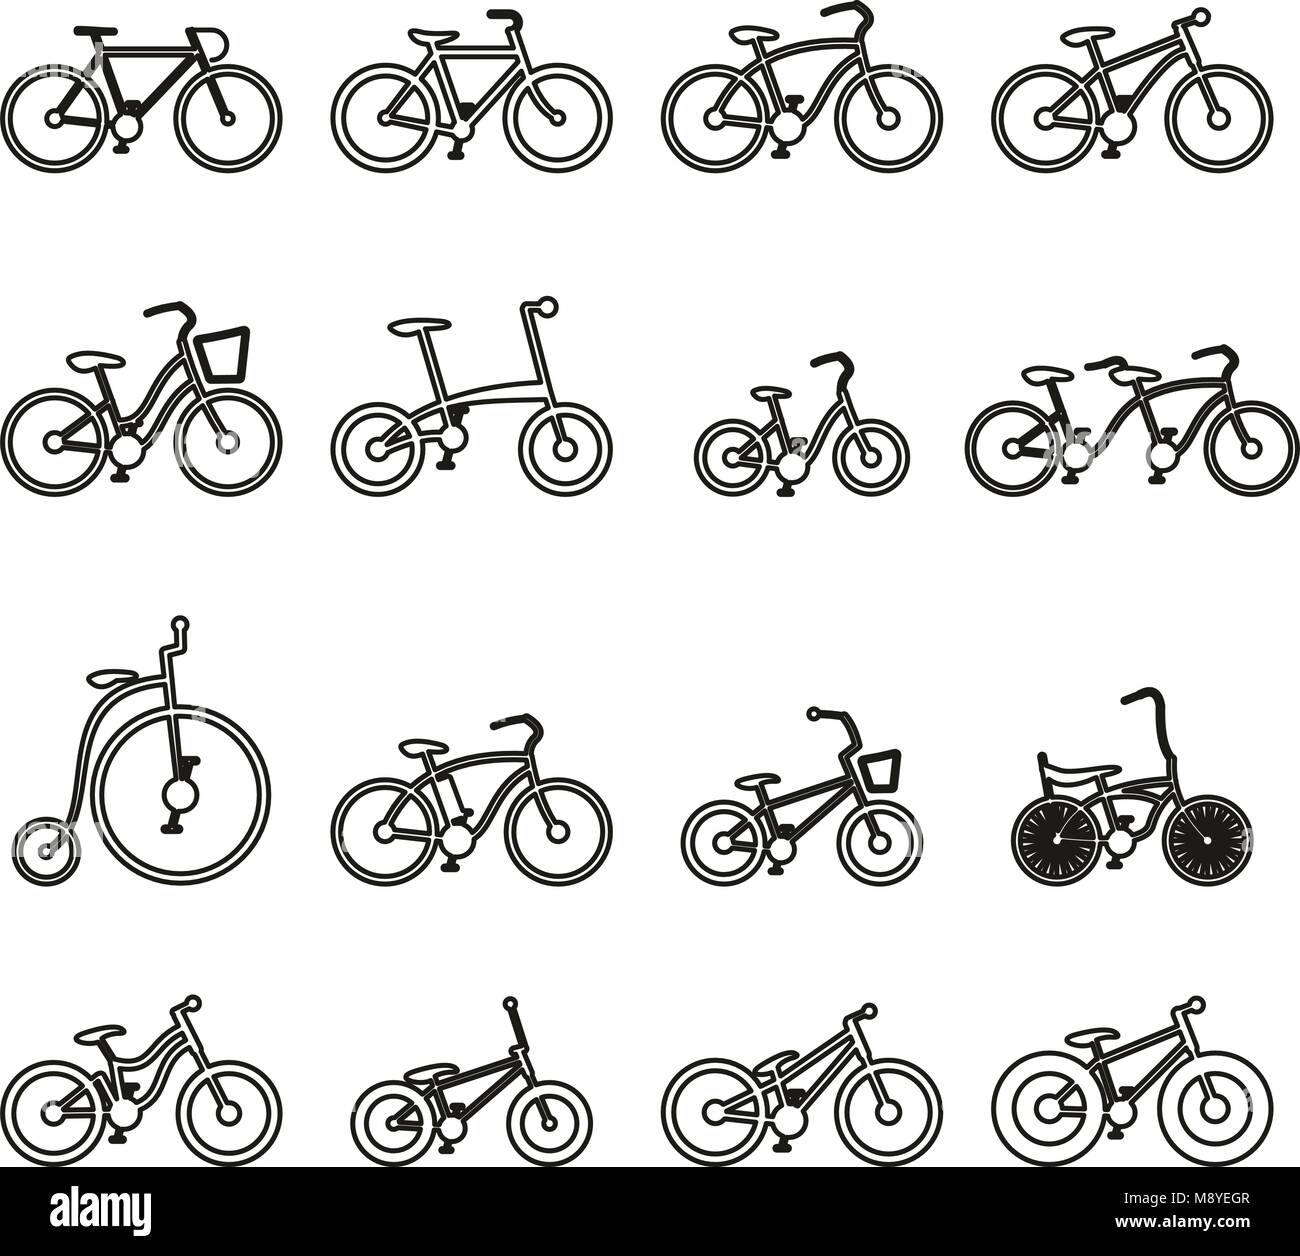 Fahrrad oder verschiedene Arten von Fahrrad Symbole dünne Linie Vektor  Abbildung Stock-Vektorgrafik - Alamy